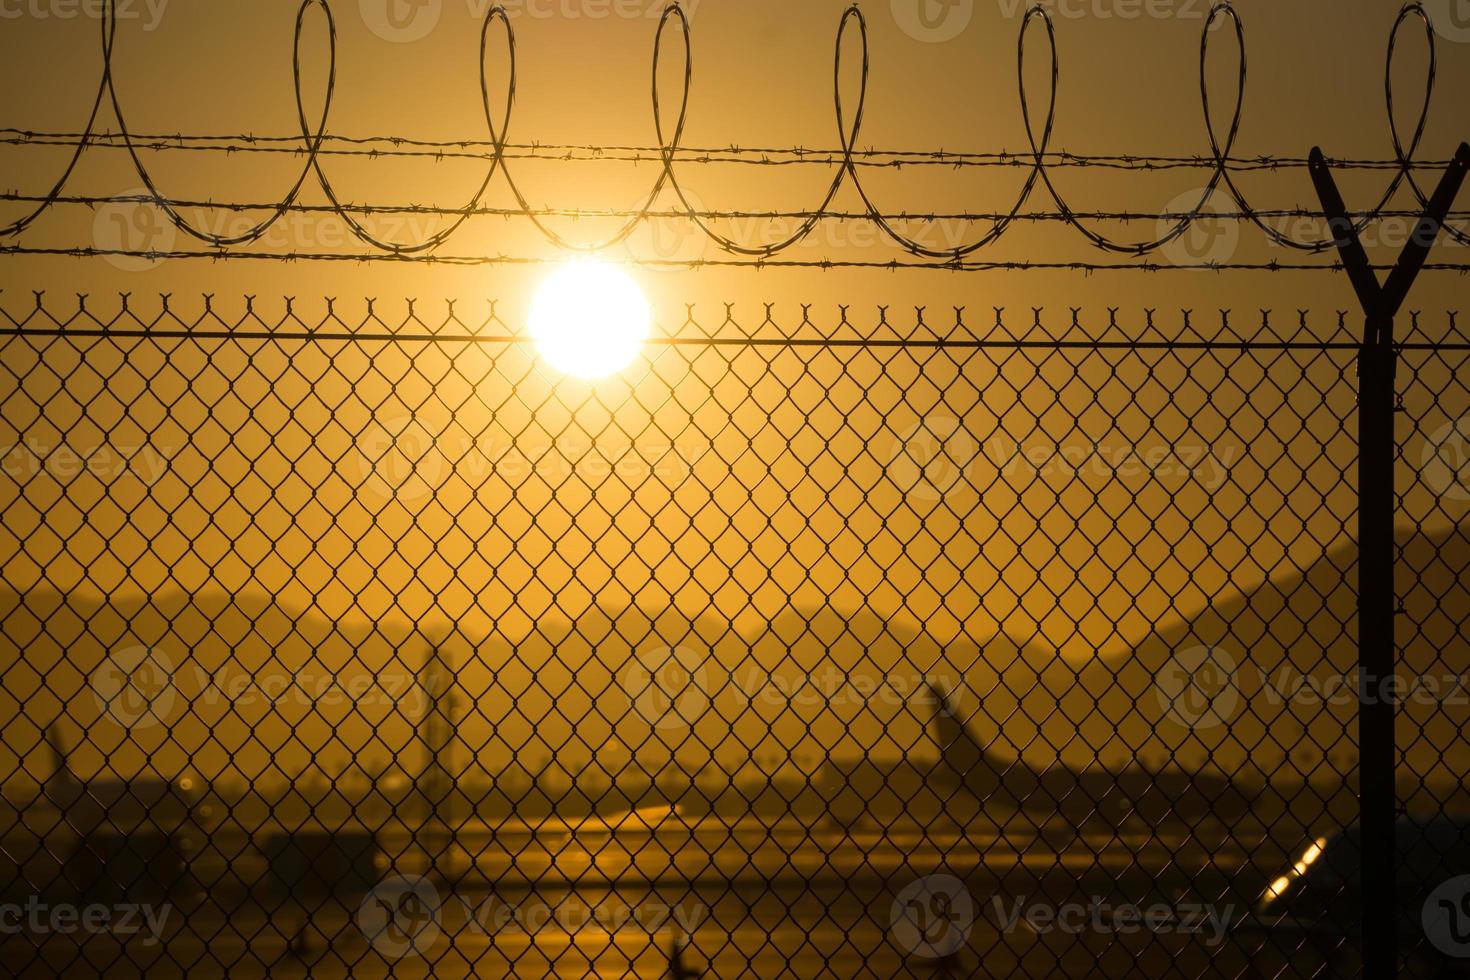 säkerhetsstaket runt den internationella flygplatsen vid soluppgång foto